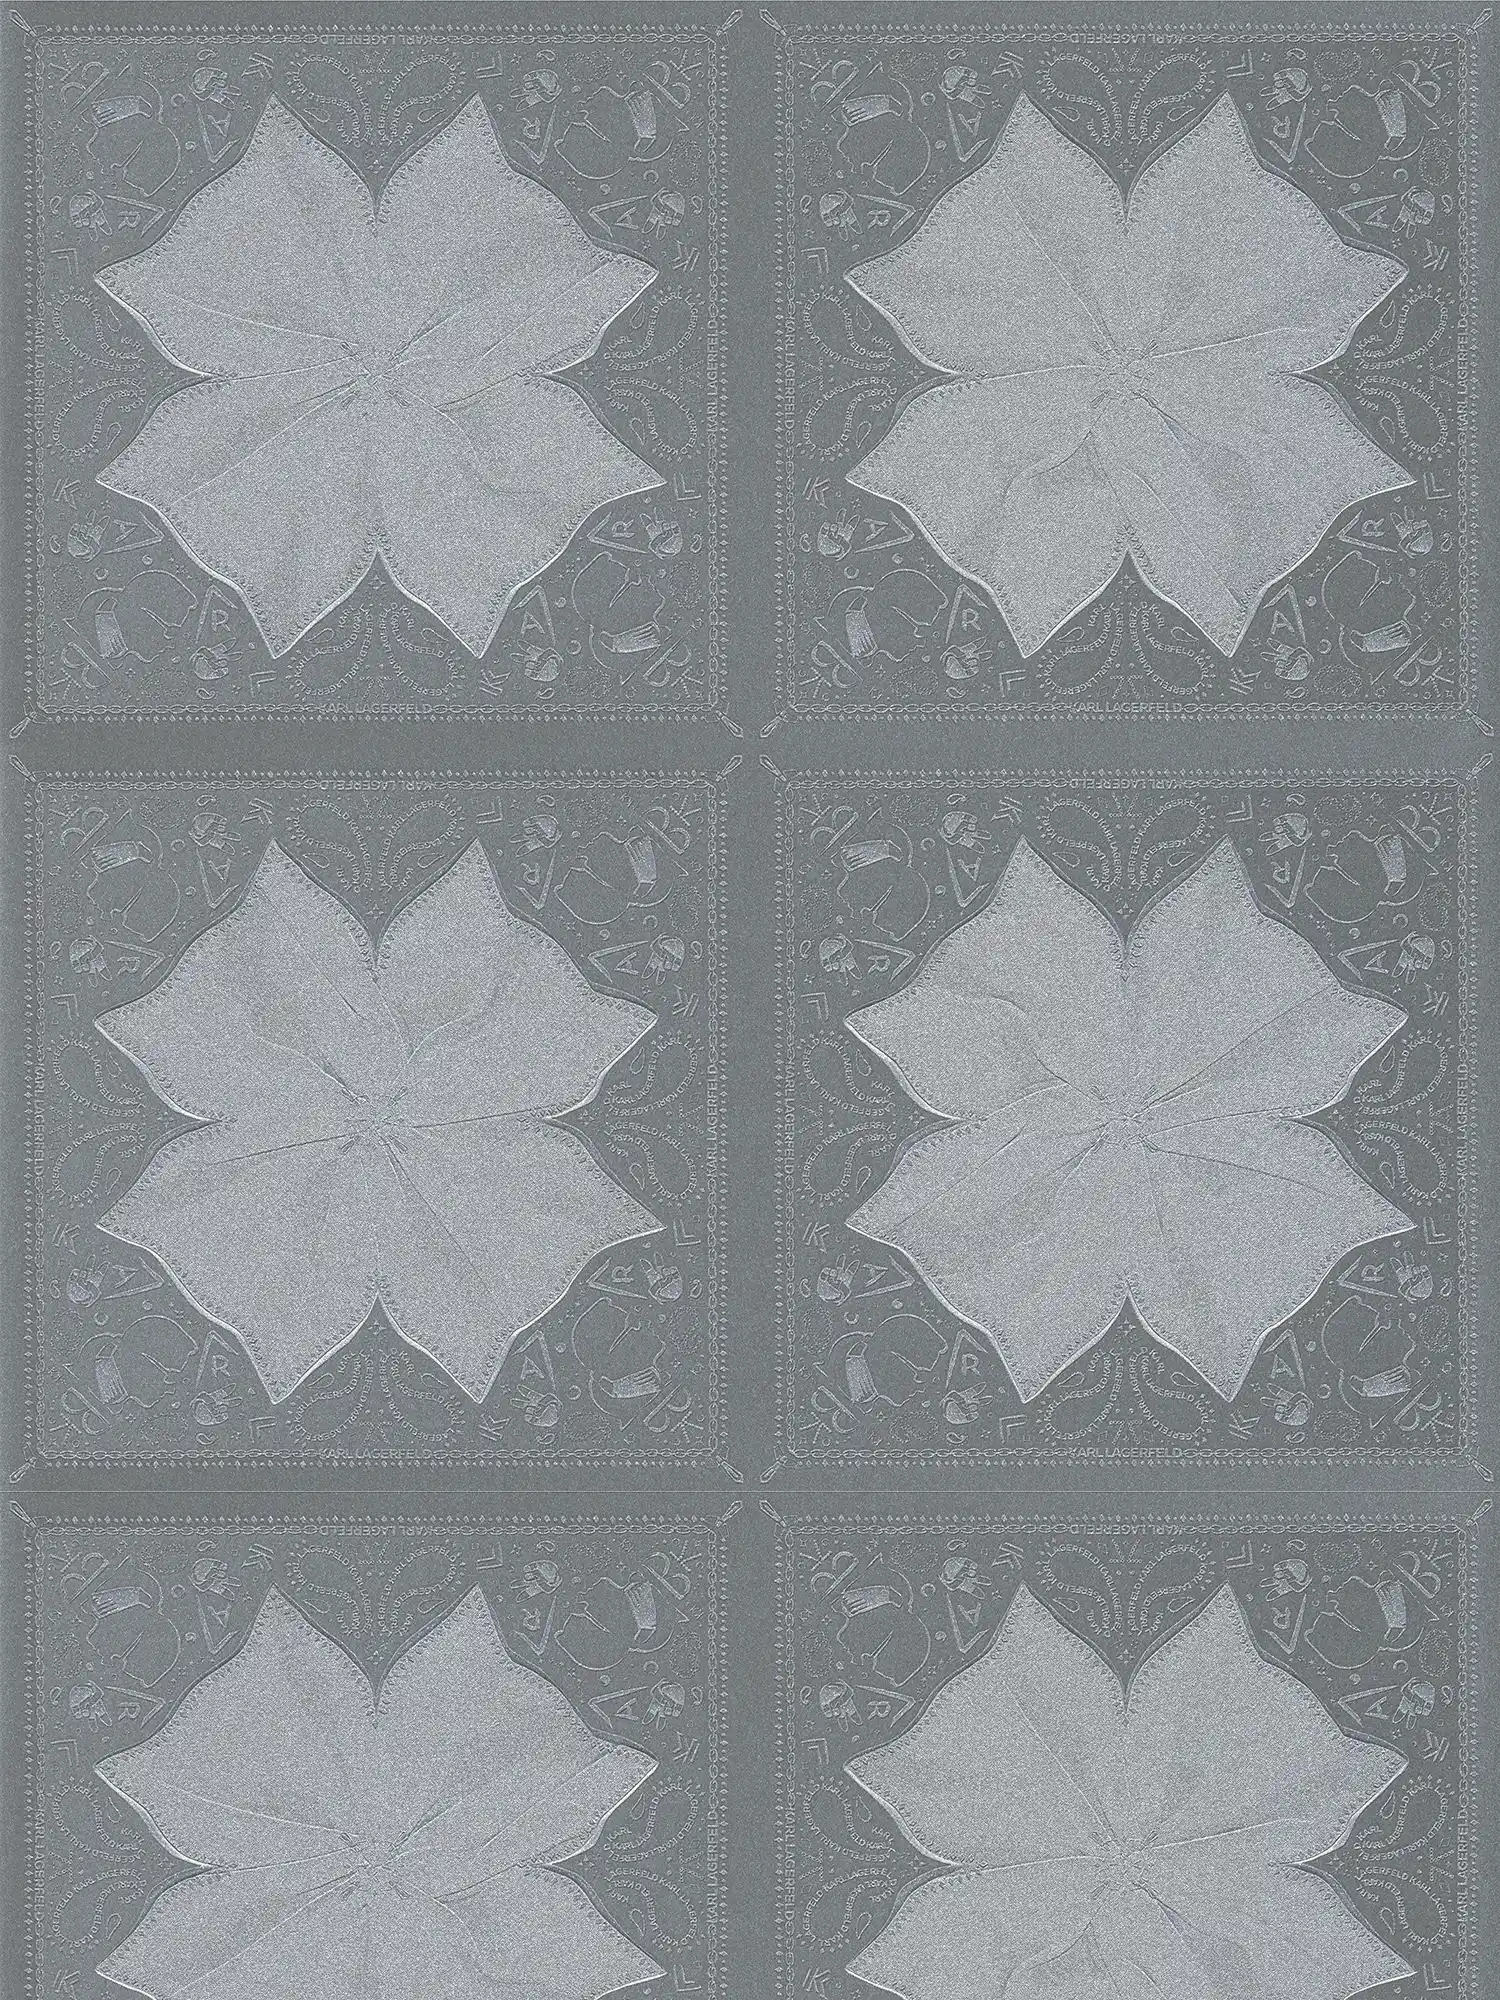 Papier peint Karl LAGERFELD motif cravate - gris, métallique
